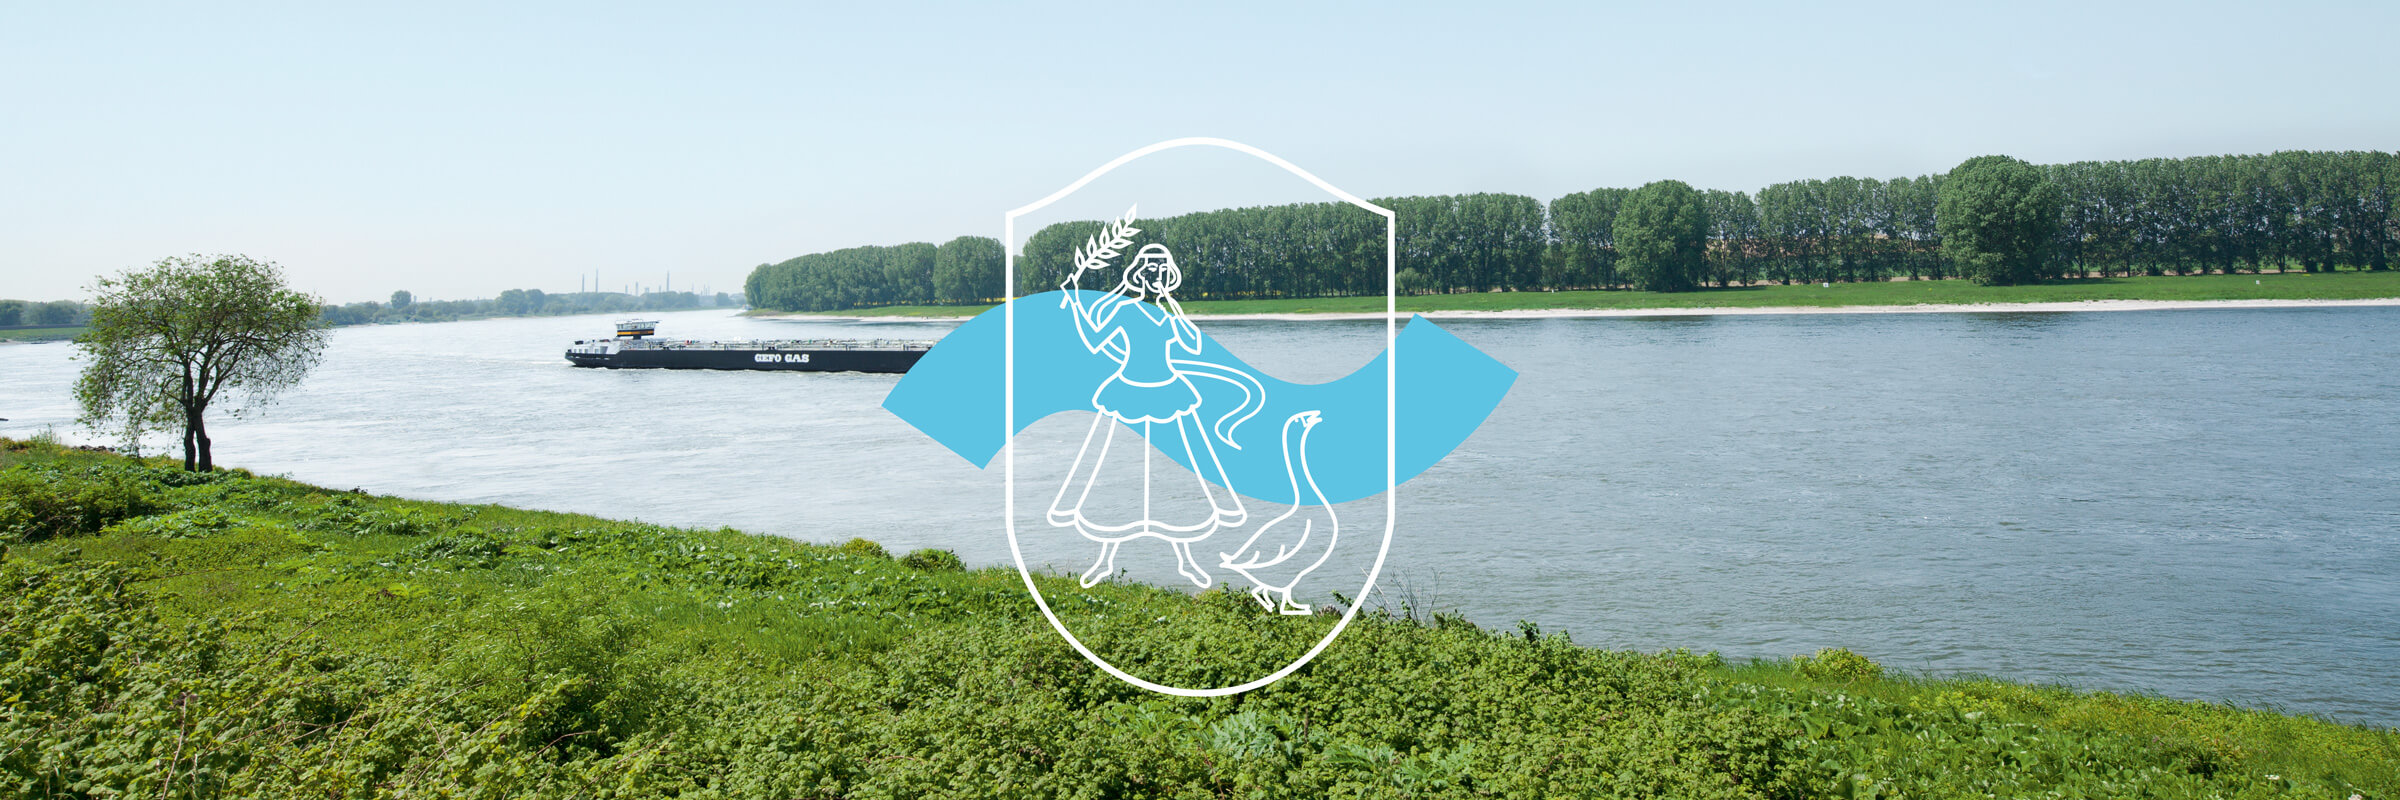 Logoentwicklung für die Stadt Monheim am Rhein bei Düsseldorf mit Bild vom Rhein